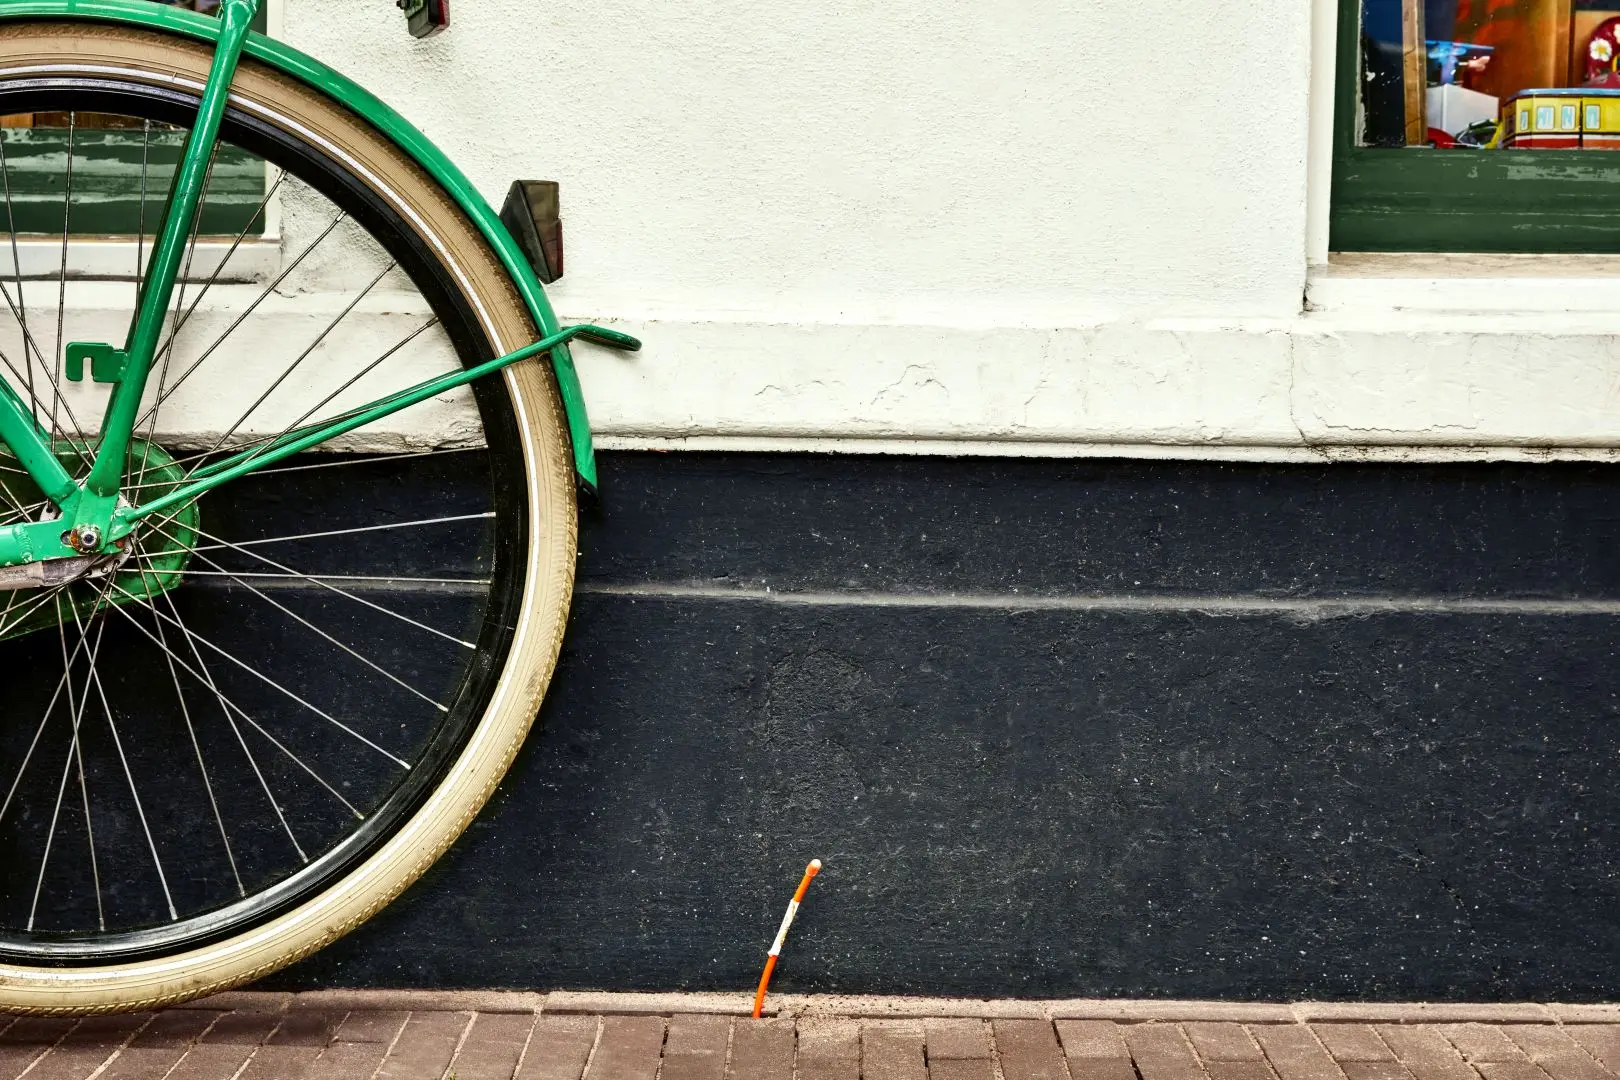 Glasvezeldraad van KPN loopt uit de straat omhoog naast een fiets